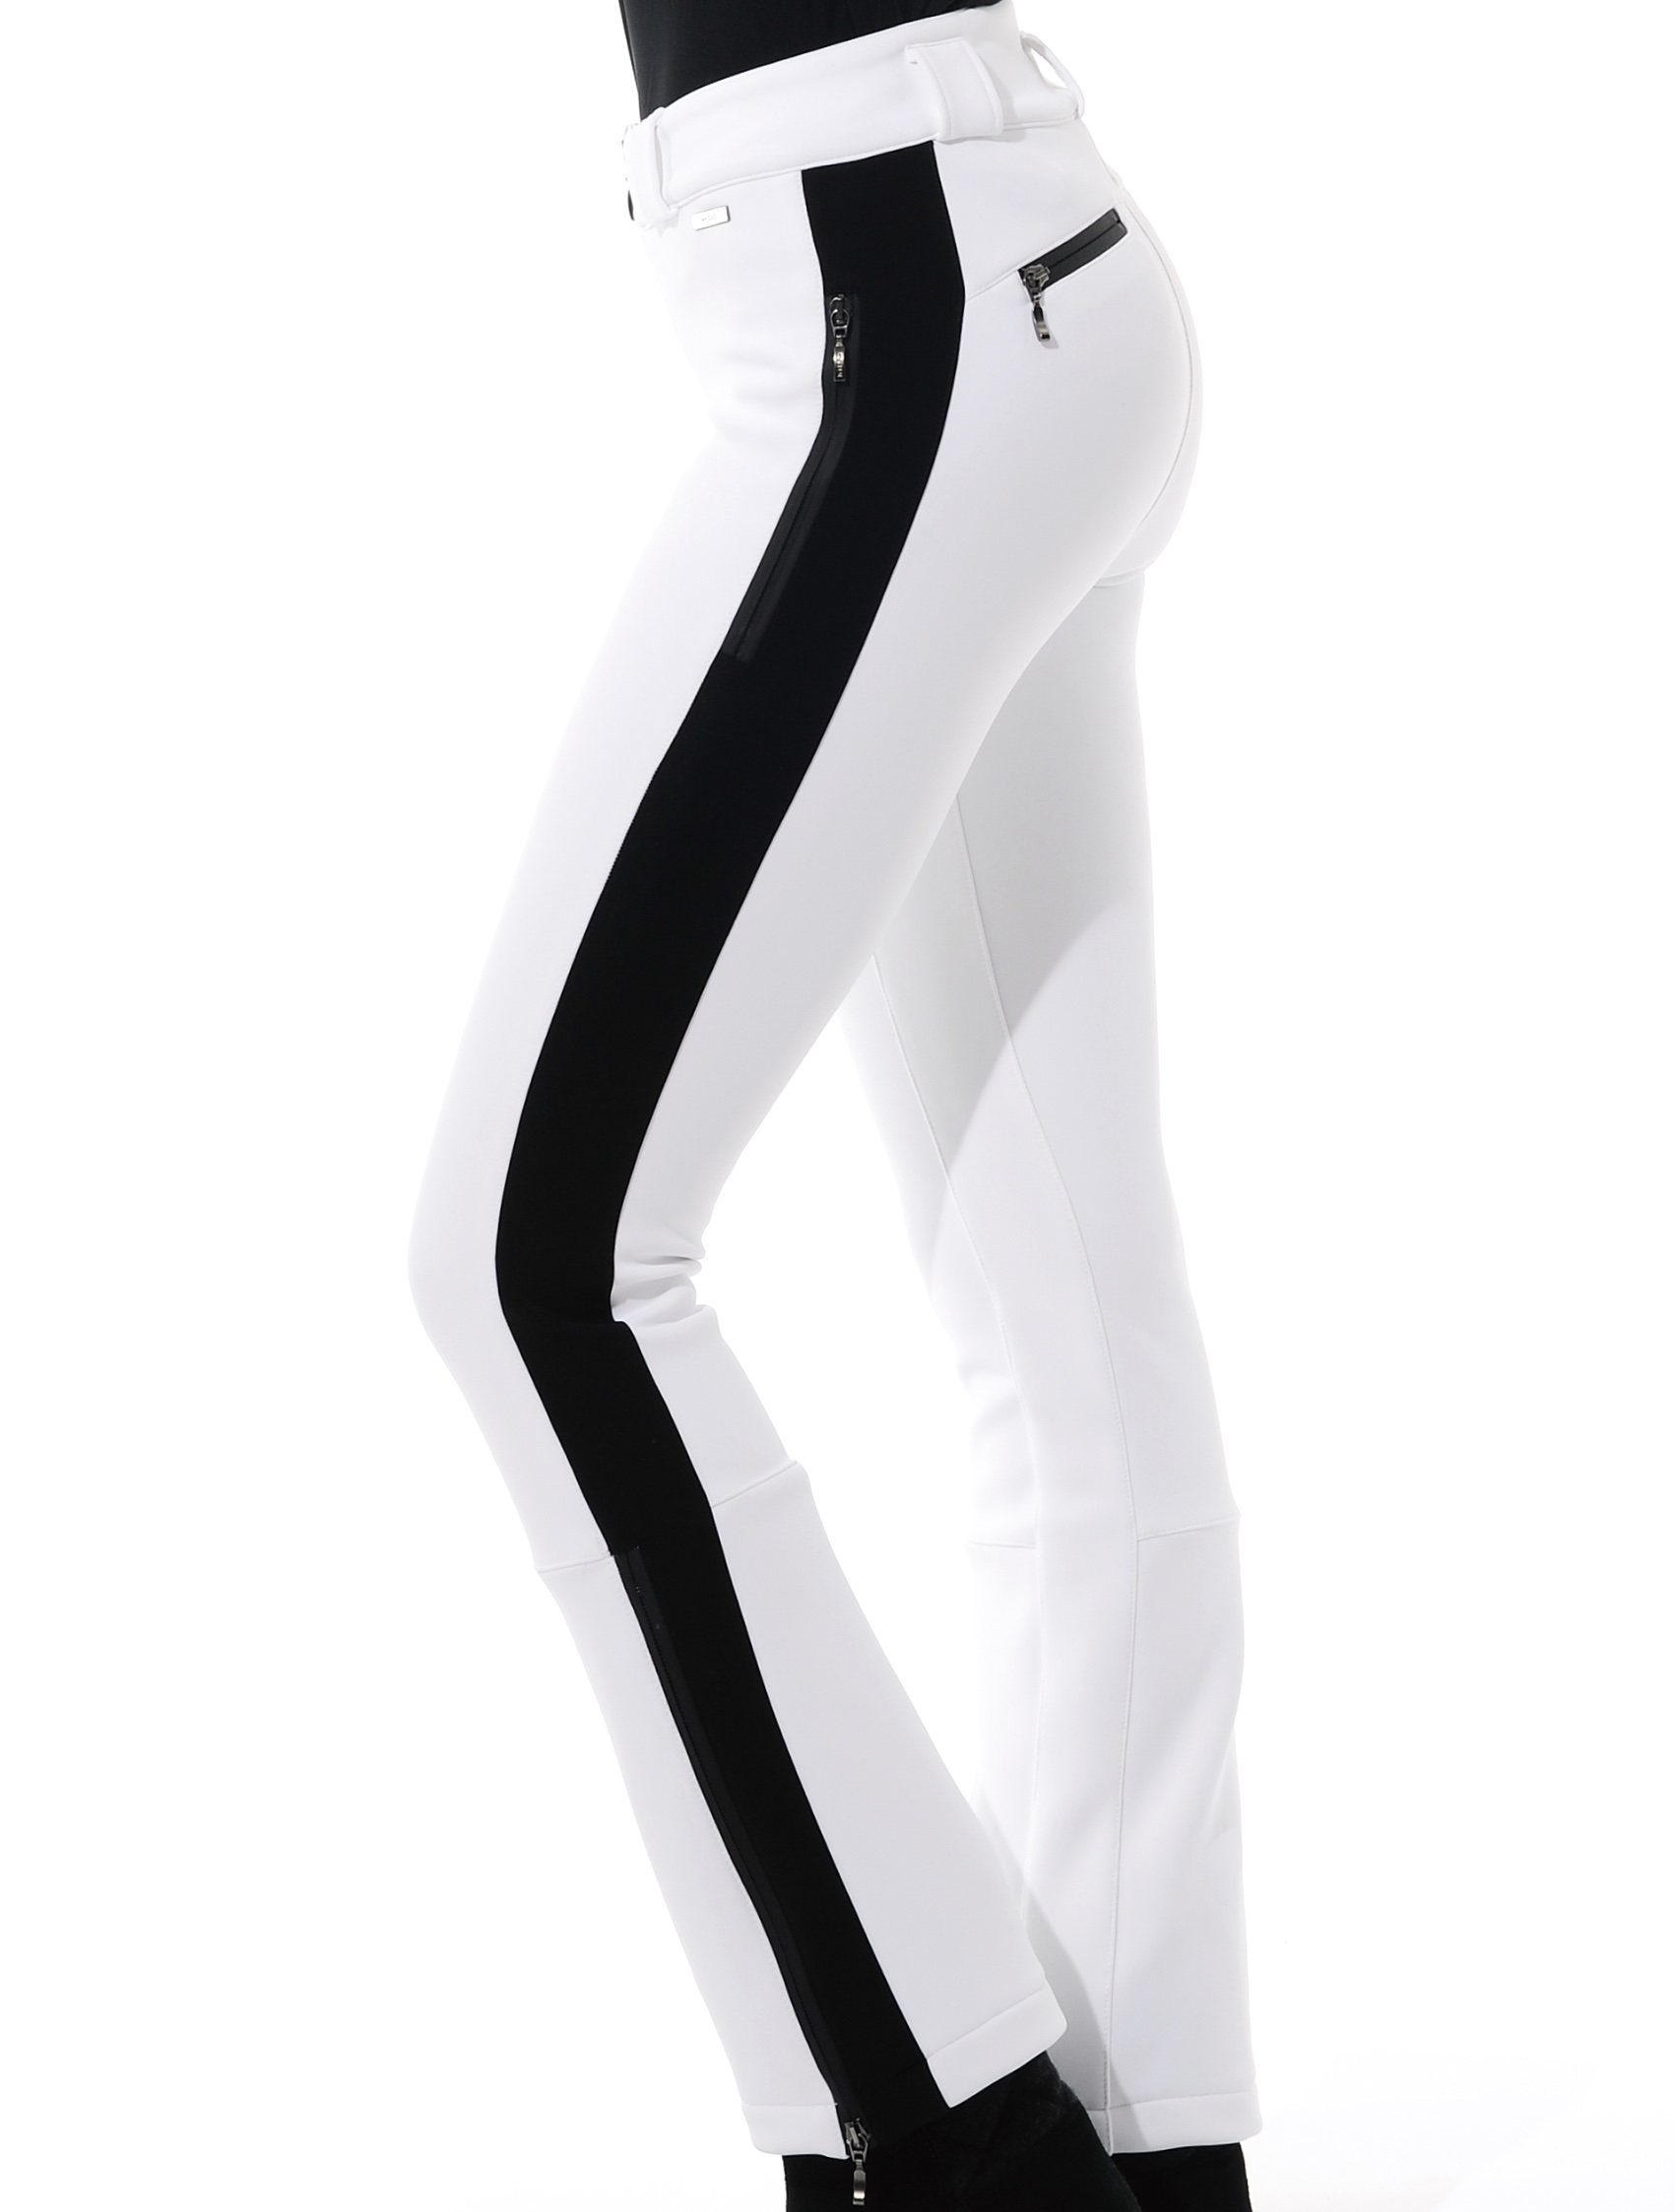 4way stretch jet pants white/black 